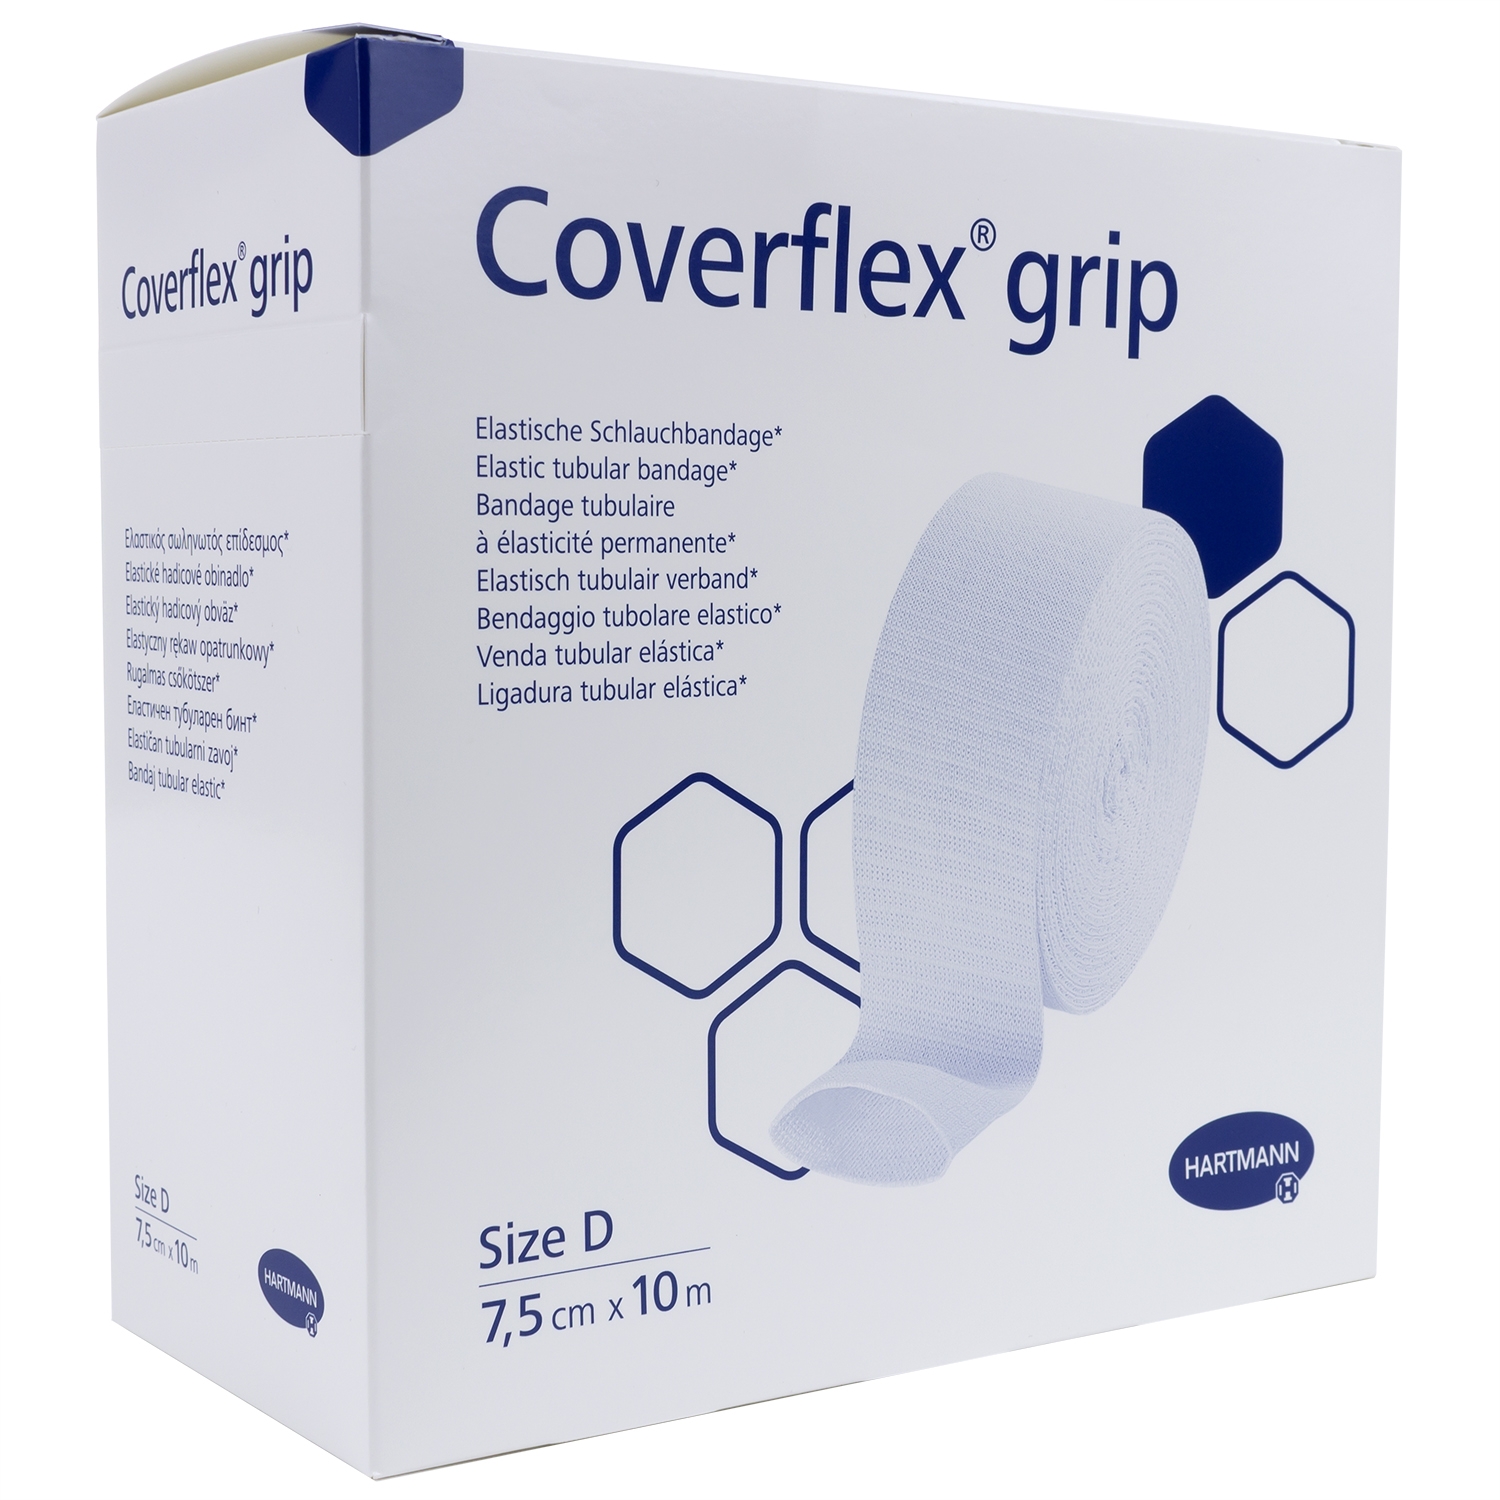 Coverflex-grip bandage tubulaire - D- 7,5 cm x10 m